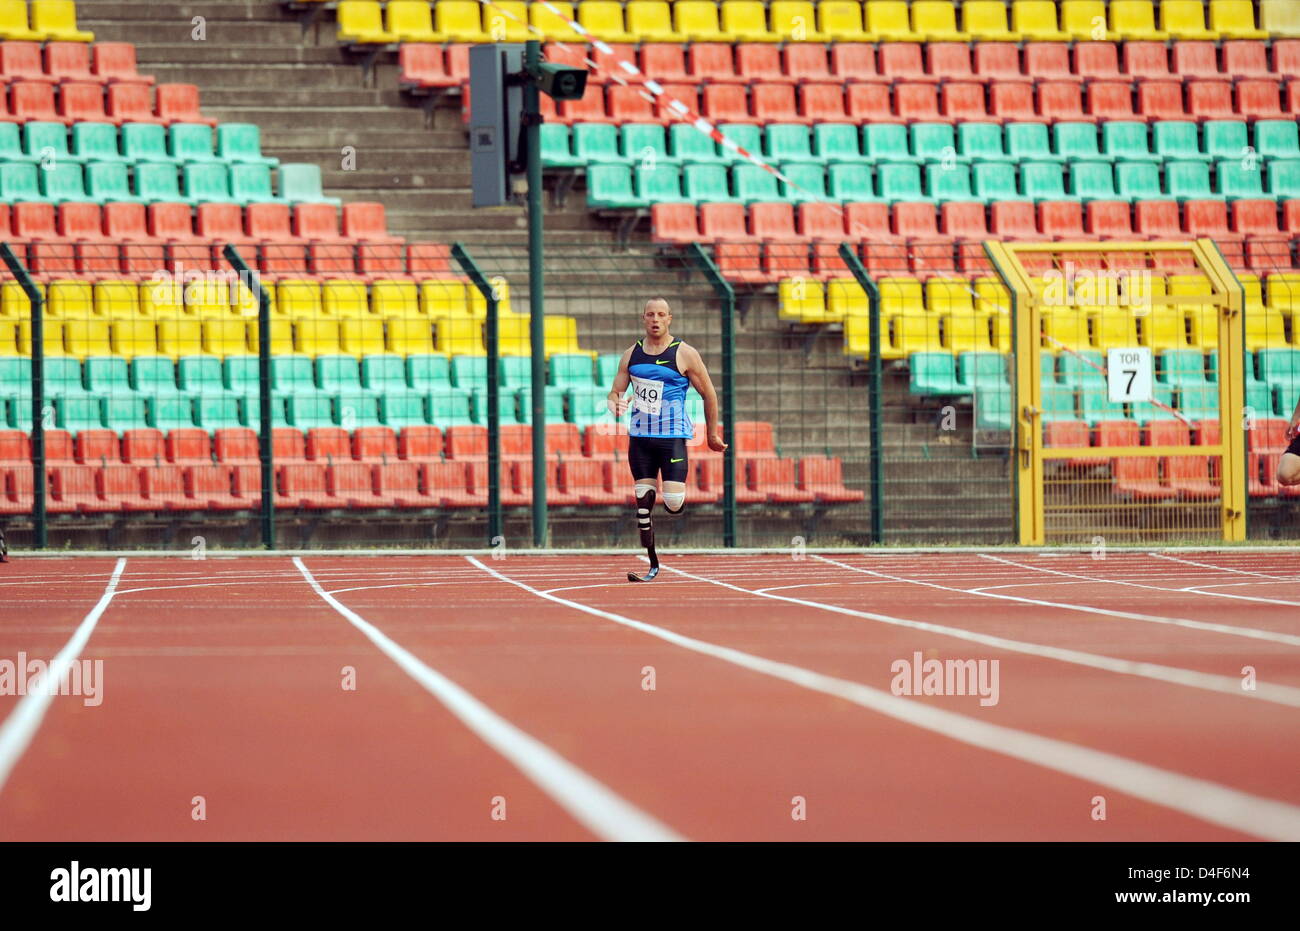 Le sprinteur sud-africain Oscar Pistorius est photographié à la concurrence de 400 mètres à l'International Allemand de championnats les handicapés (IDM) à Berlin, Allemagne, 14 juin 2008. Pistorius, né sans jambes inférieures et s'exécute avec prothèses en carbone, a remporté la compétition en 49,16 secondes. Photo : Soeren Stache Banque D'Images